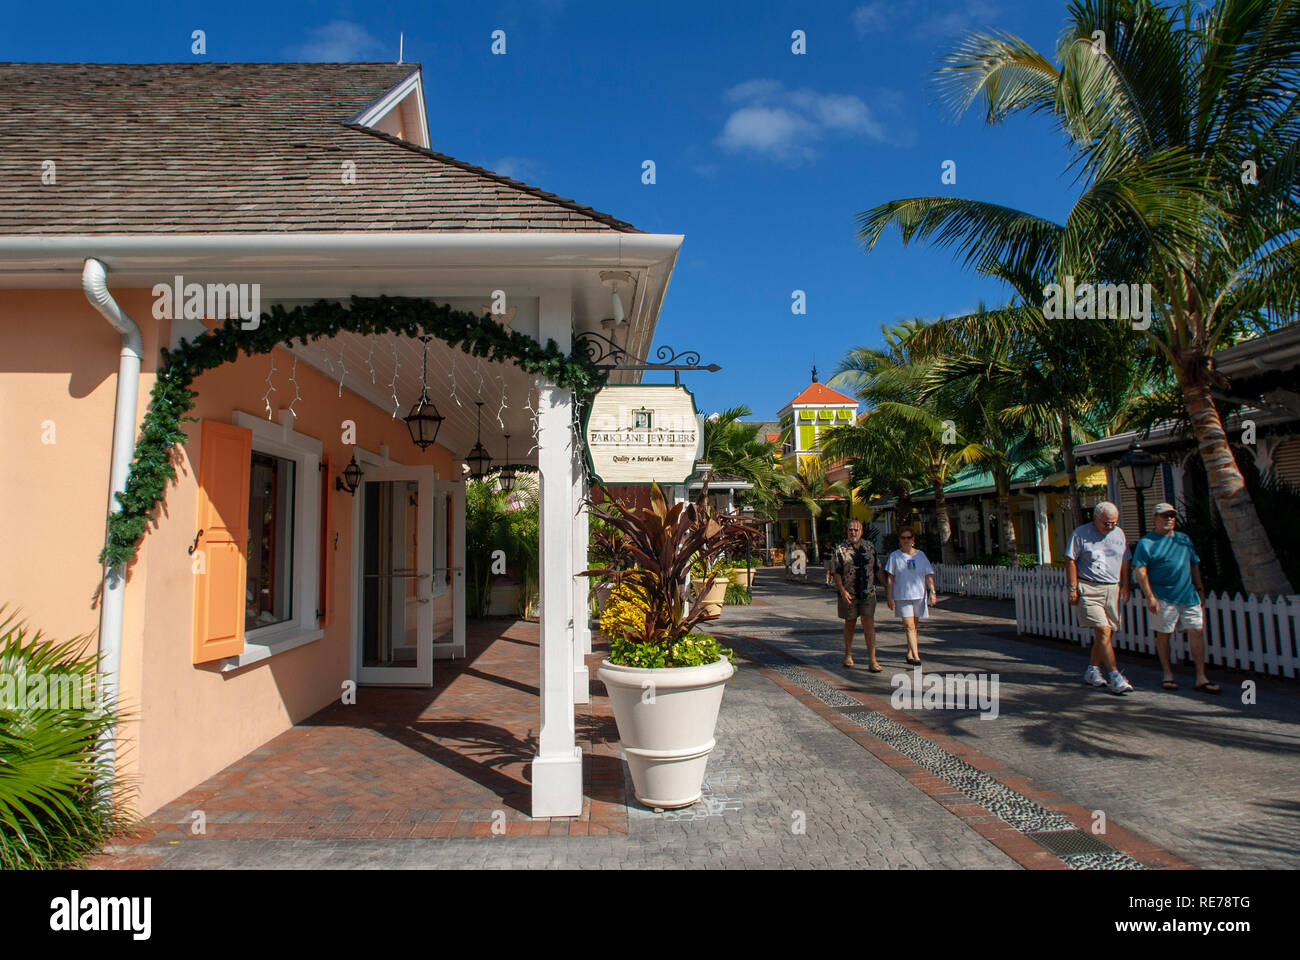 Negozi di lusso dell'Hotel Atlantis. Paradise Island, a Nassau, New Providence Island, Bahamas, dei Caraibi. Panorama di Atlantis hotel e Paradise Island. Foto Stock